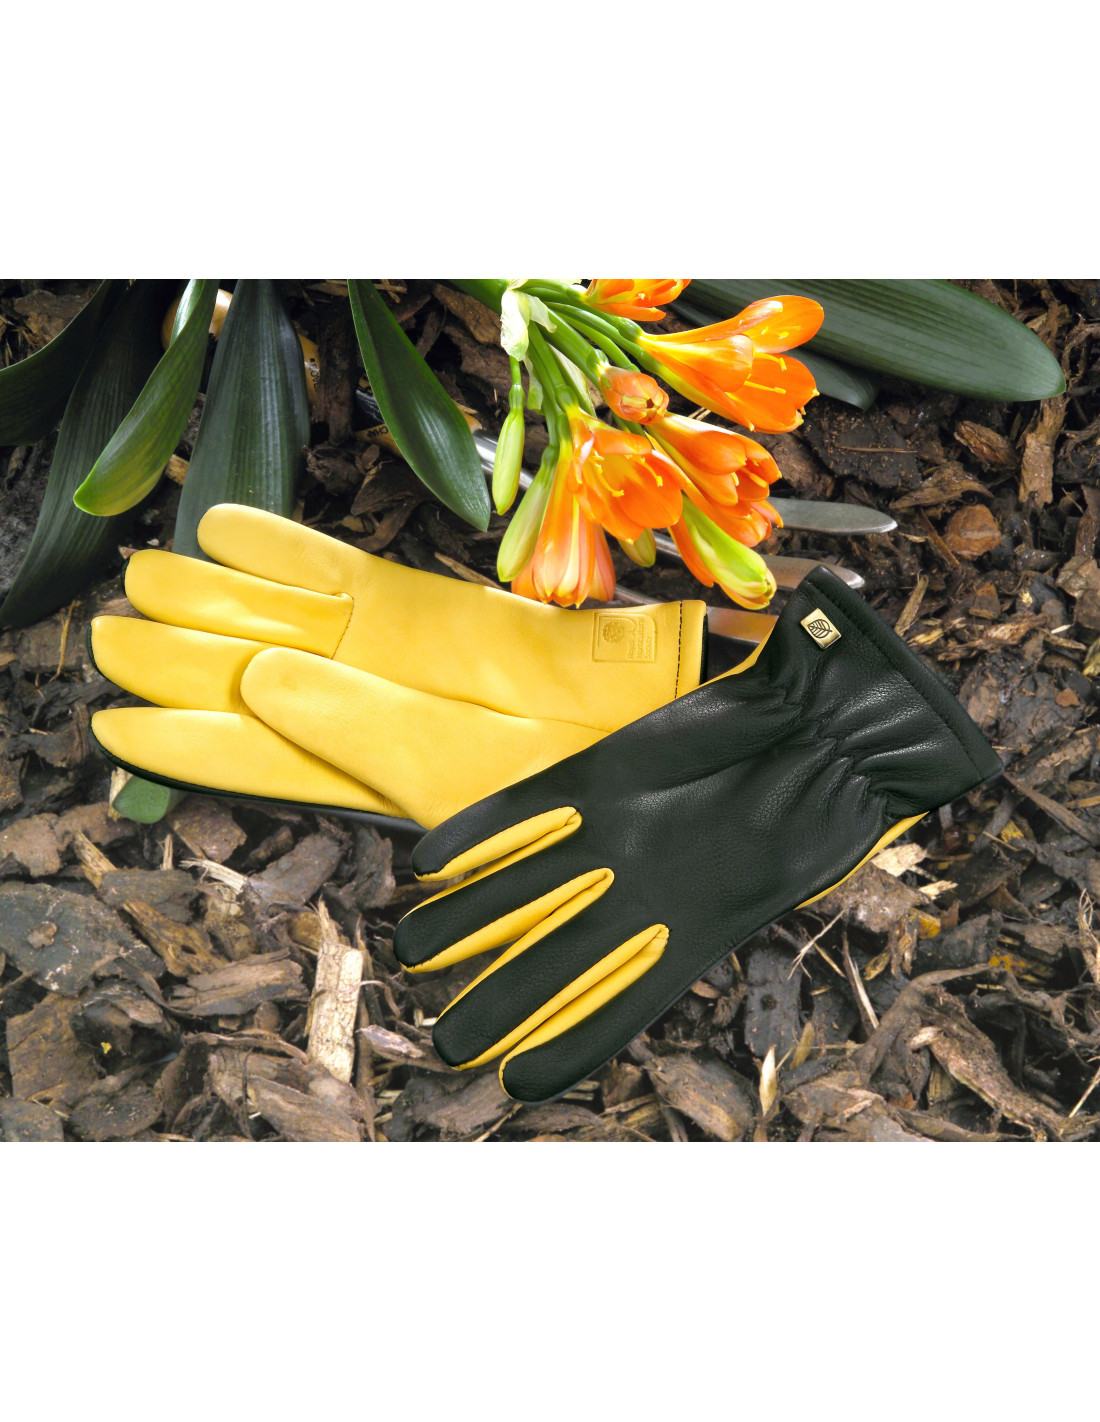 Wow ros jernbane Gold leaf handsker dry touch til dame hos den engelske gartner shop